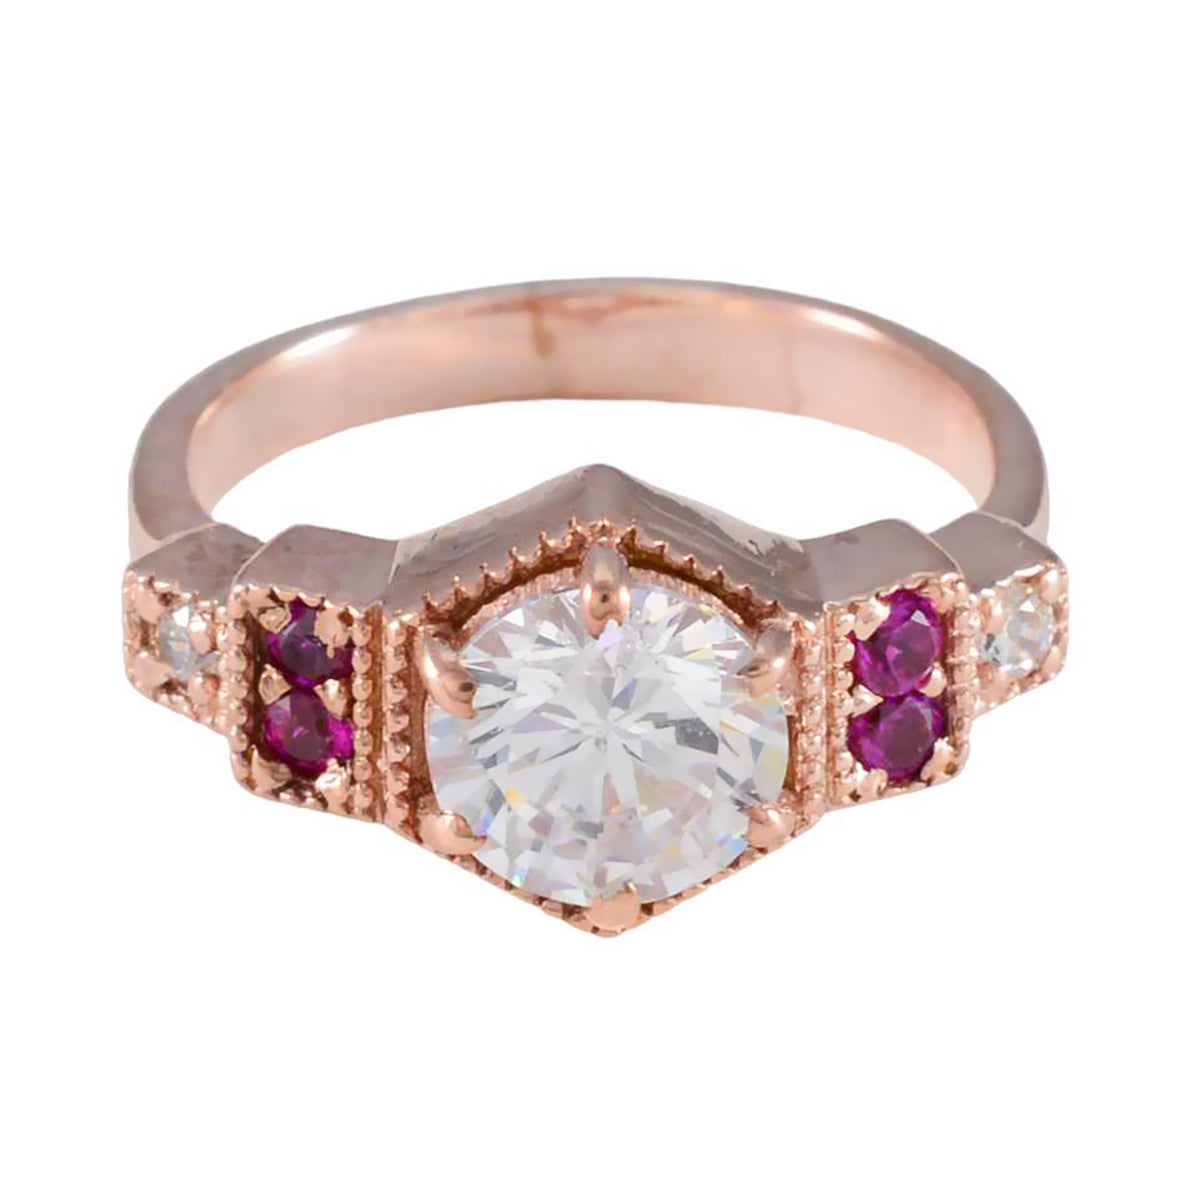 anello vintage in argento riyo con placcatura in oro rosa, rubino, pietra cz, forma rotonda, montatura a punta, gioielli di moda, anello di capodanno